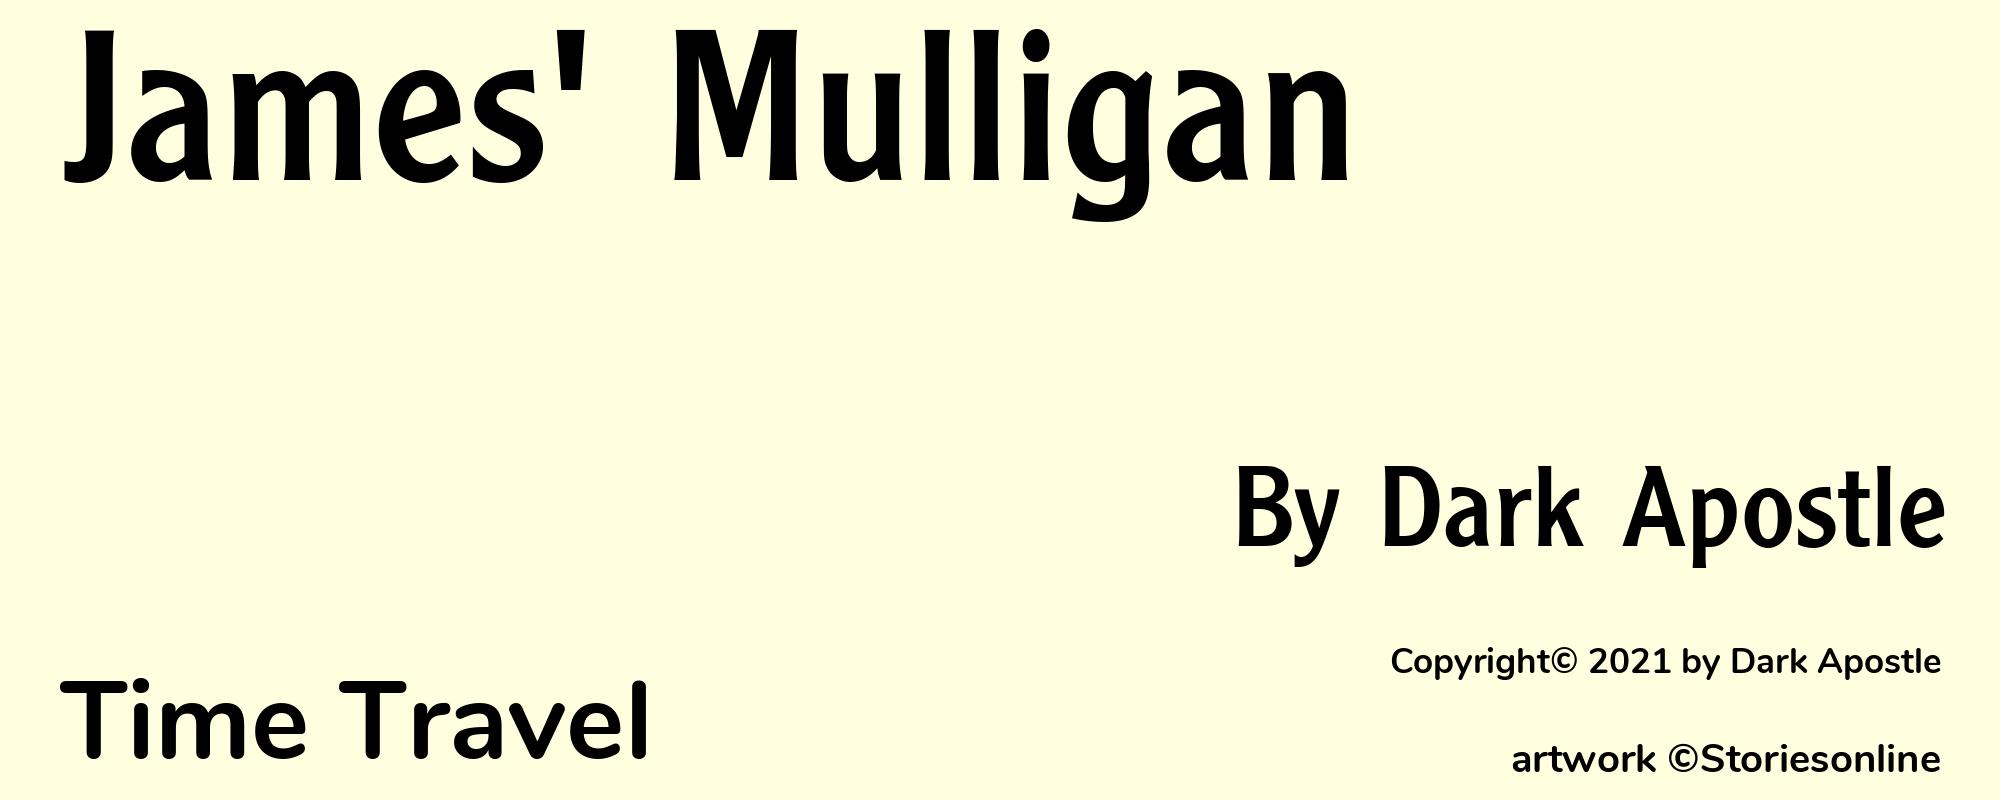 James' Mulligan - Cover